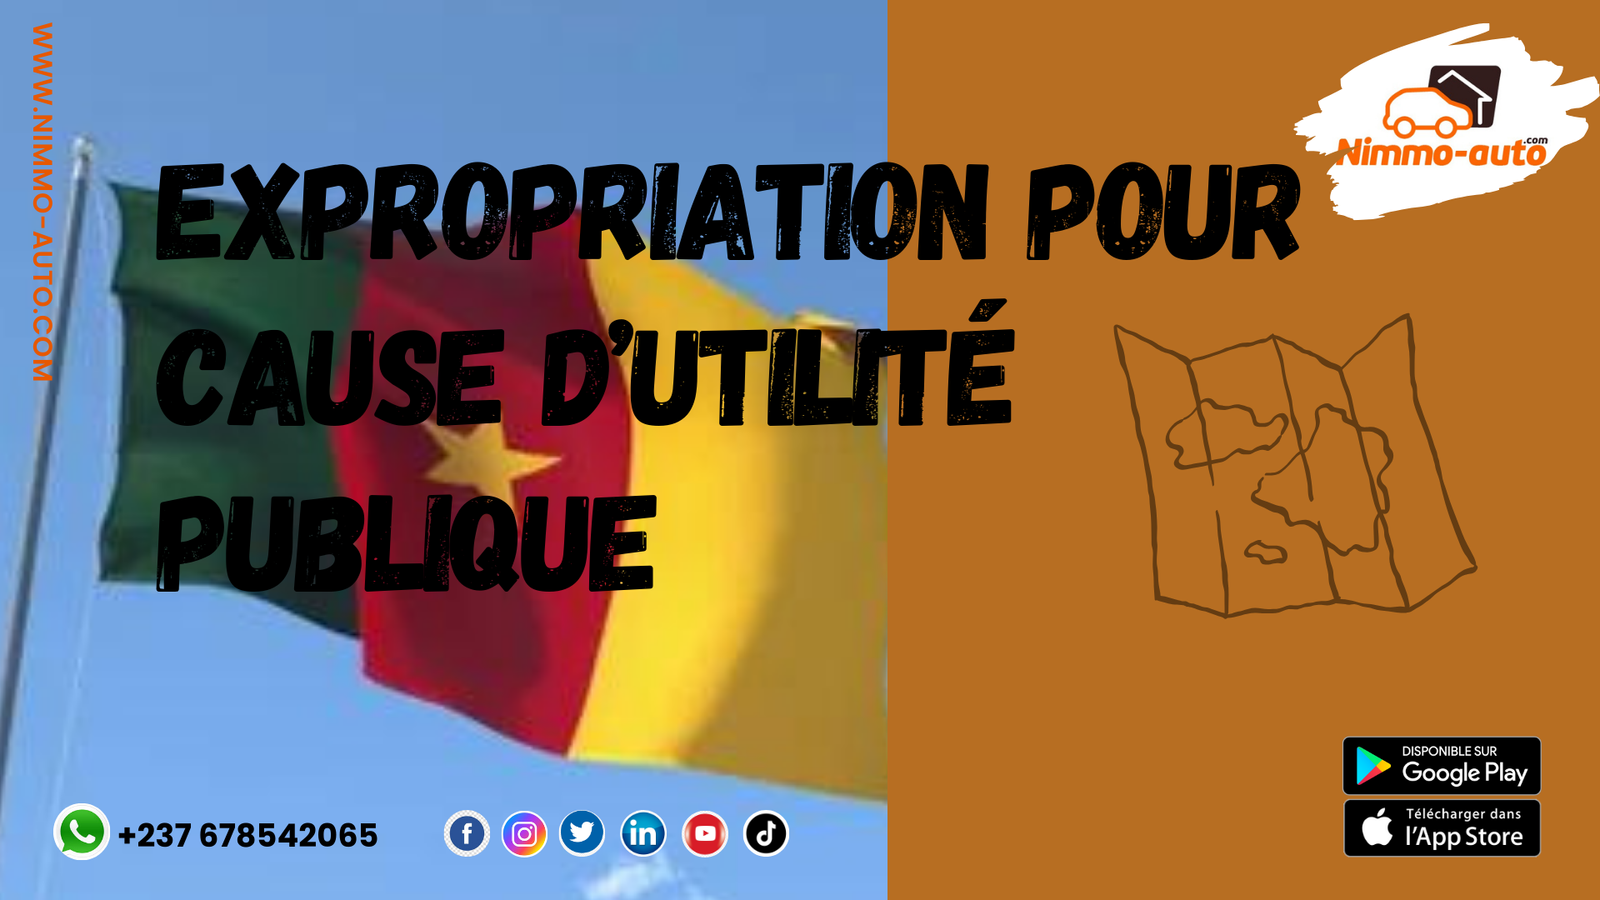 L’EXPROPRIATION POUR CAUSE D’UTILITE PUBLIQUE AU CAMEROUN